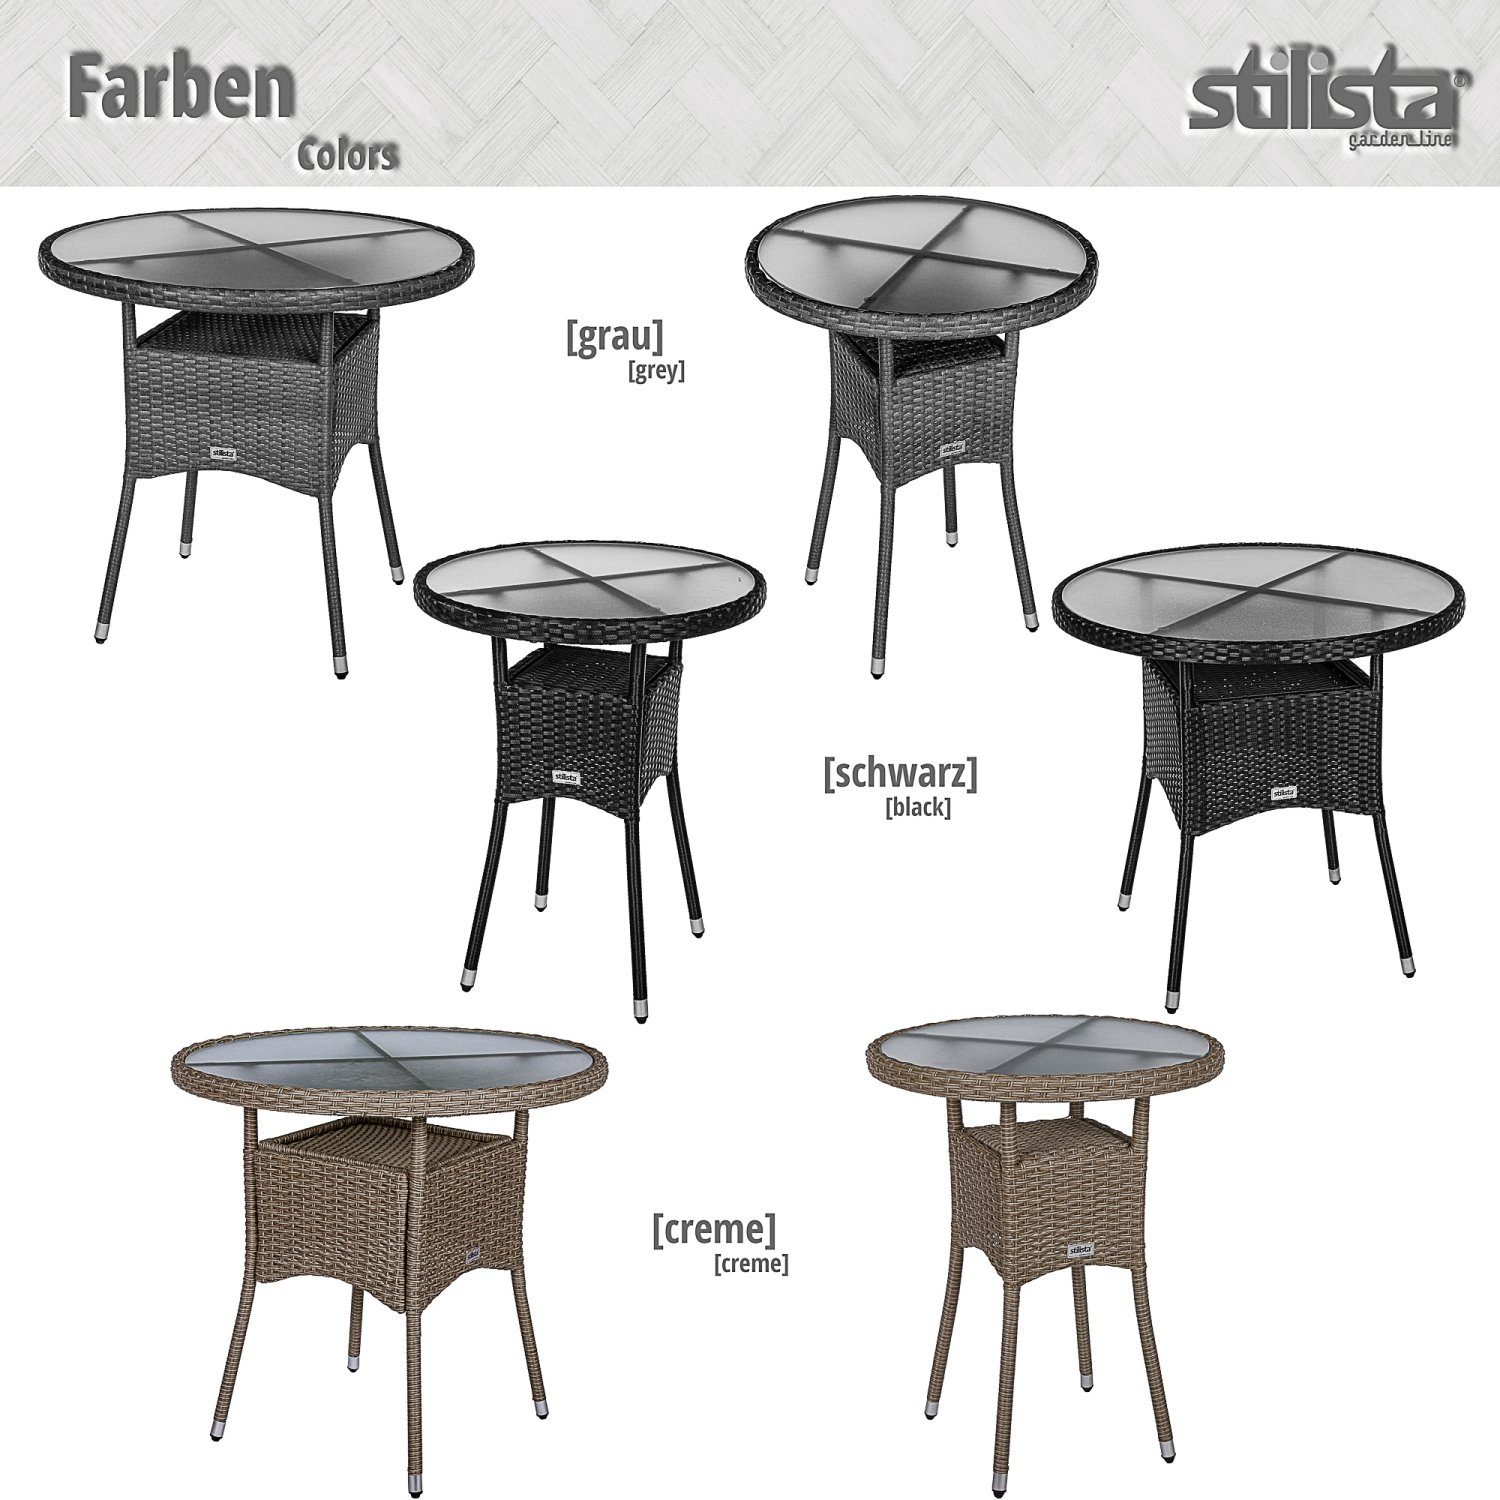 Rund, Tischplatte, Kaffeetisch, Beistelltisch Polyrattan, STILISTA und Balkontisch Glas Creme Gartentisch Loungetisch Farbwahl Modell-